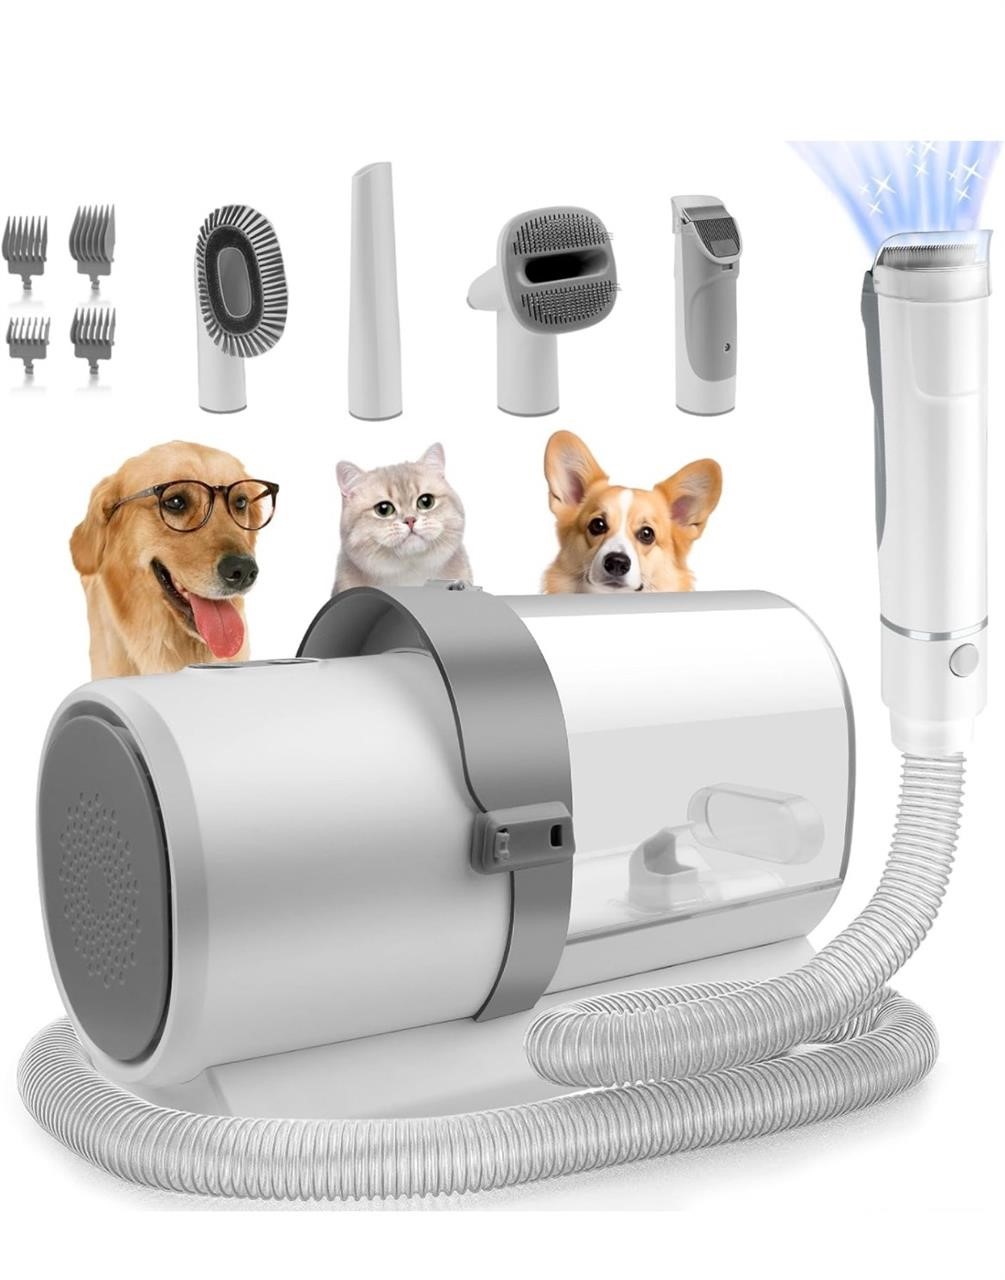 Dog Grooming Kit, 5 in 1 Pet Grooming Vacuum